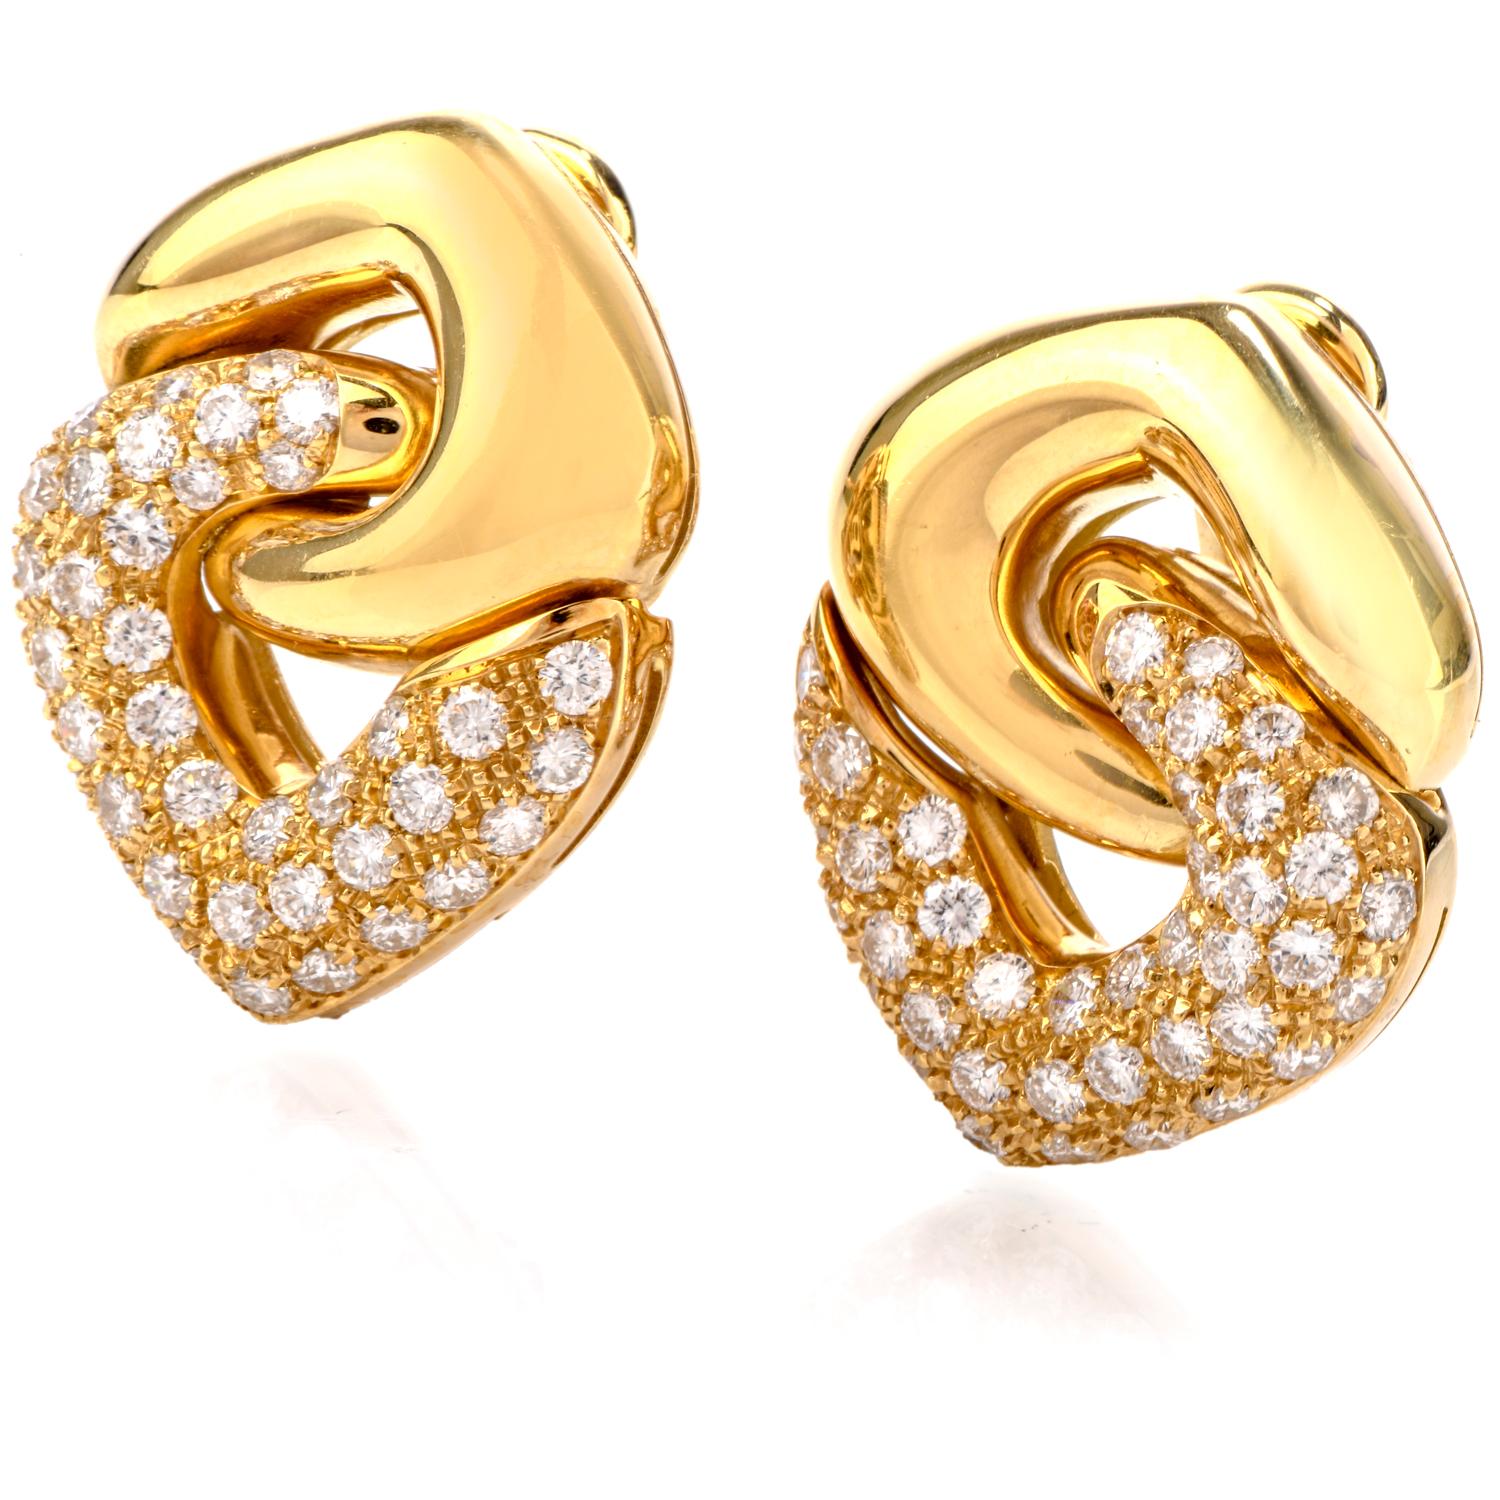 Diese exquisiten hellen und lebendigen Designer-Ohrringe wurden aus 18 Karat Gold gefertigt. 

 Mit einem kühnen, hochglanzpolierten Segment auf der Oberseite

und darunter ist ein mit Diamanten besetztes Segment aufgehängt.

Der Kontrast zwischen